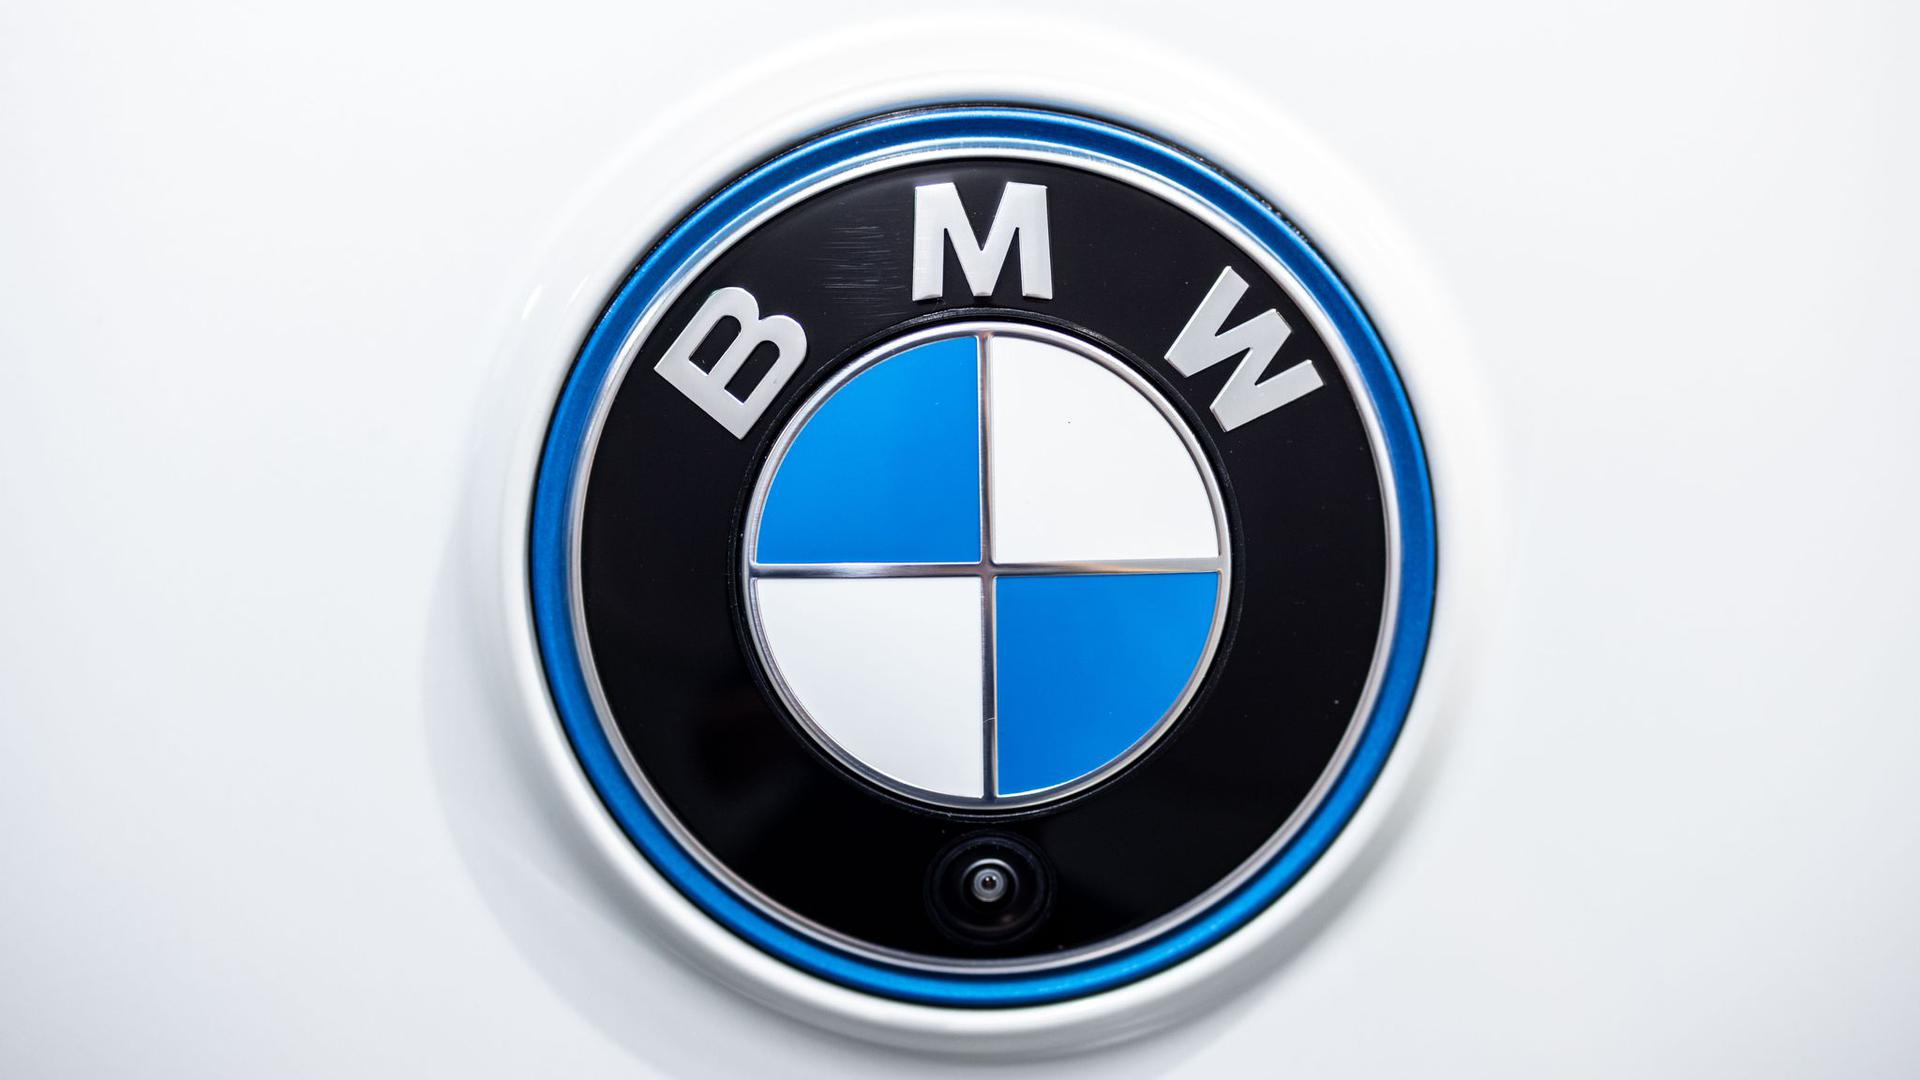 Das BMW-Herstellerlogo.